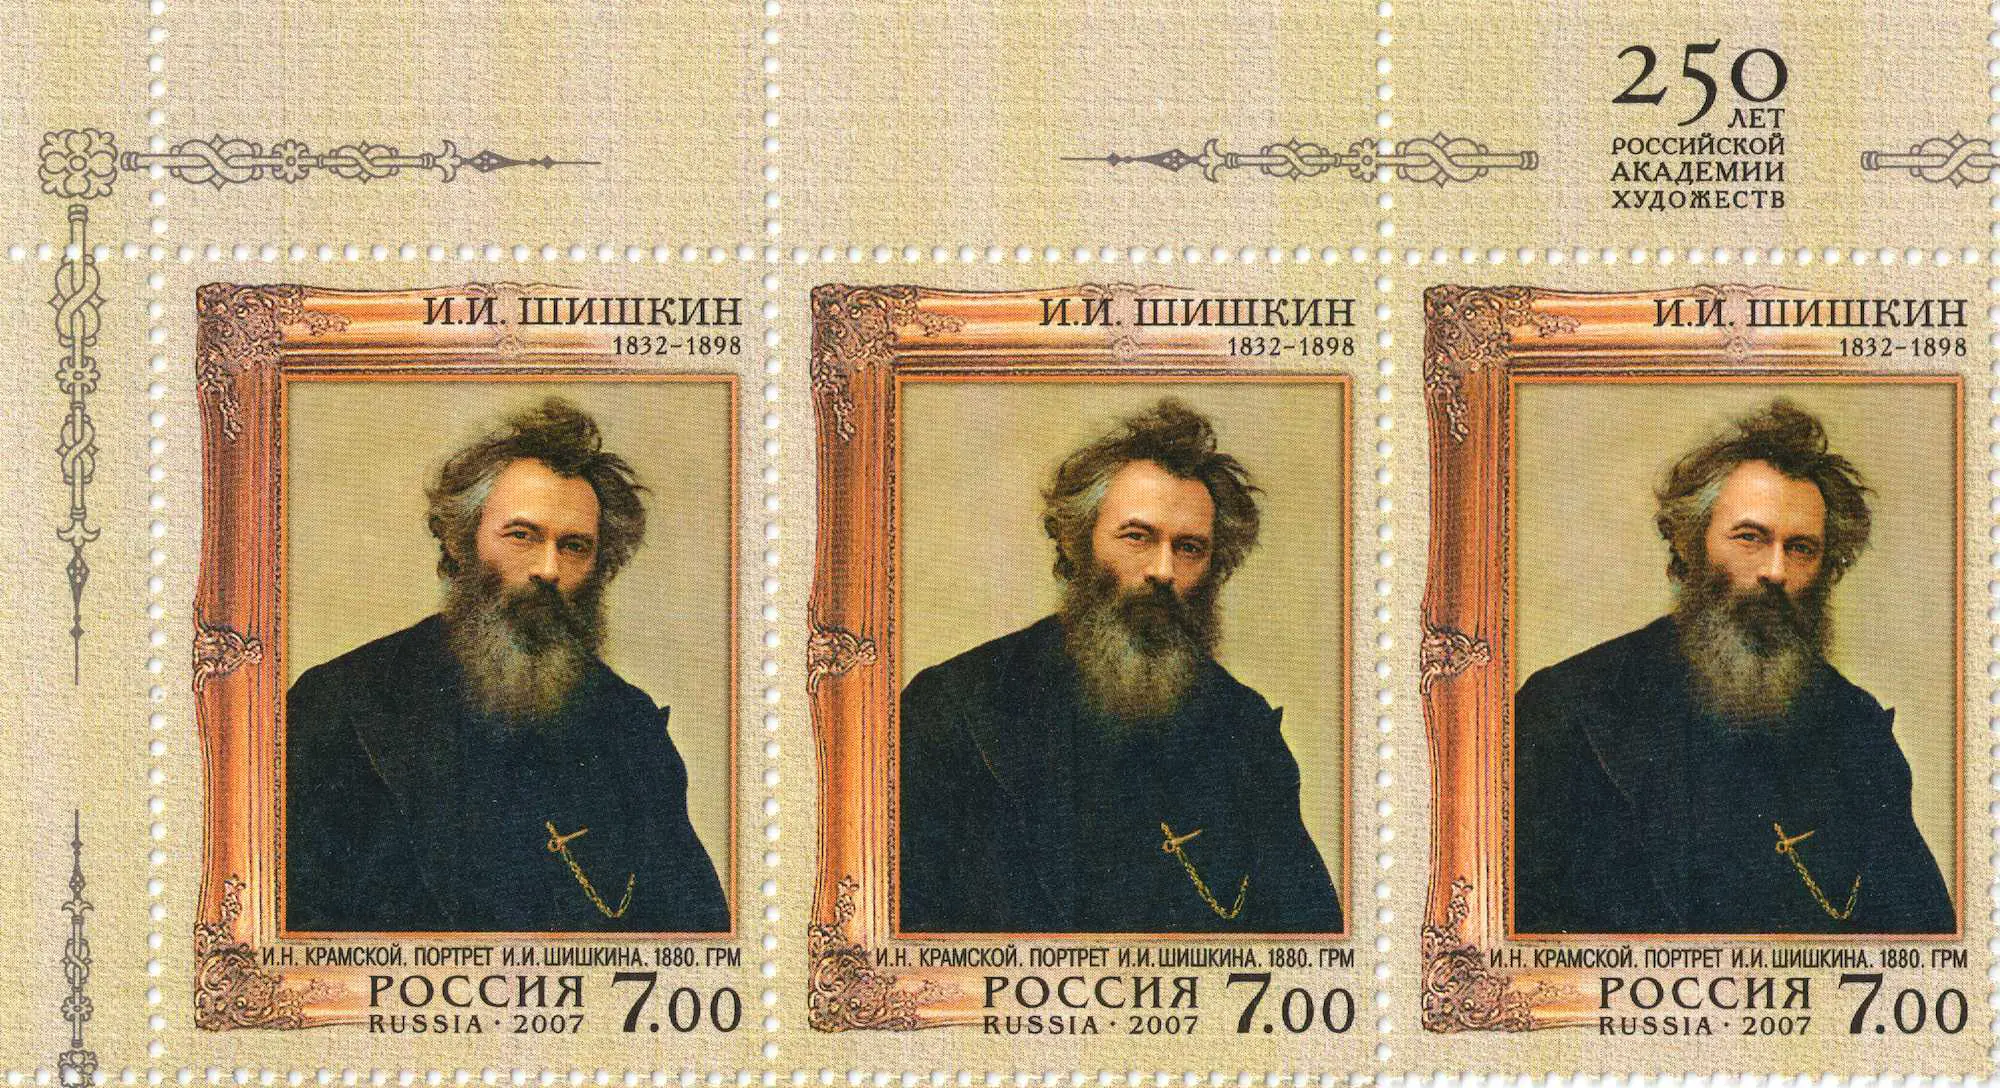 Ivan Shishkin Russian painter